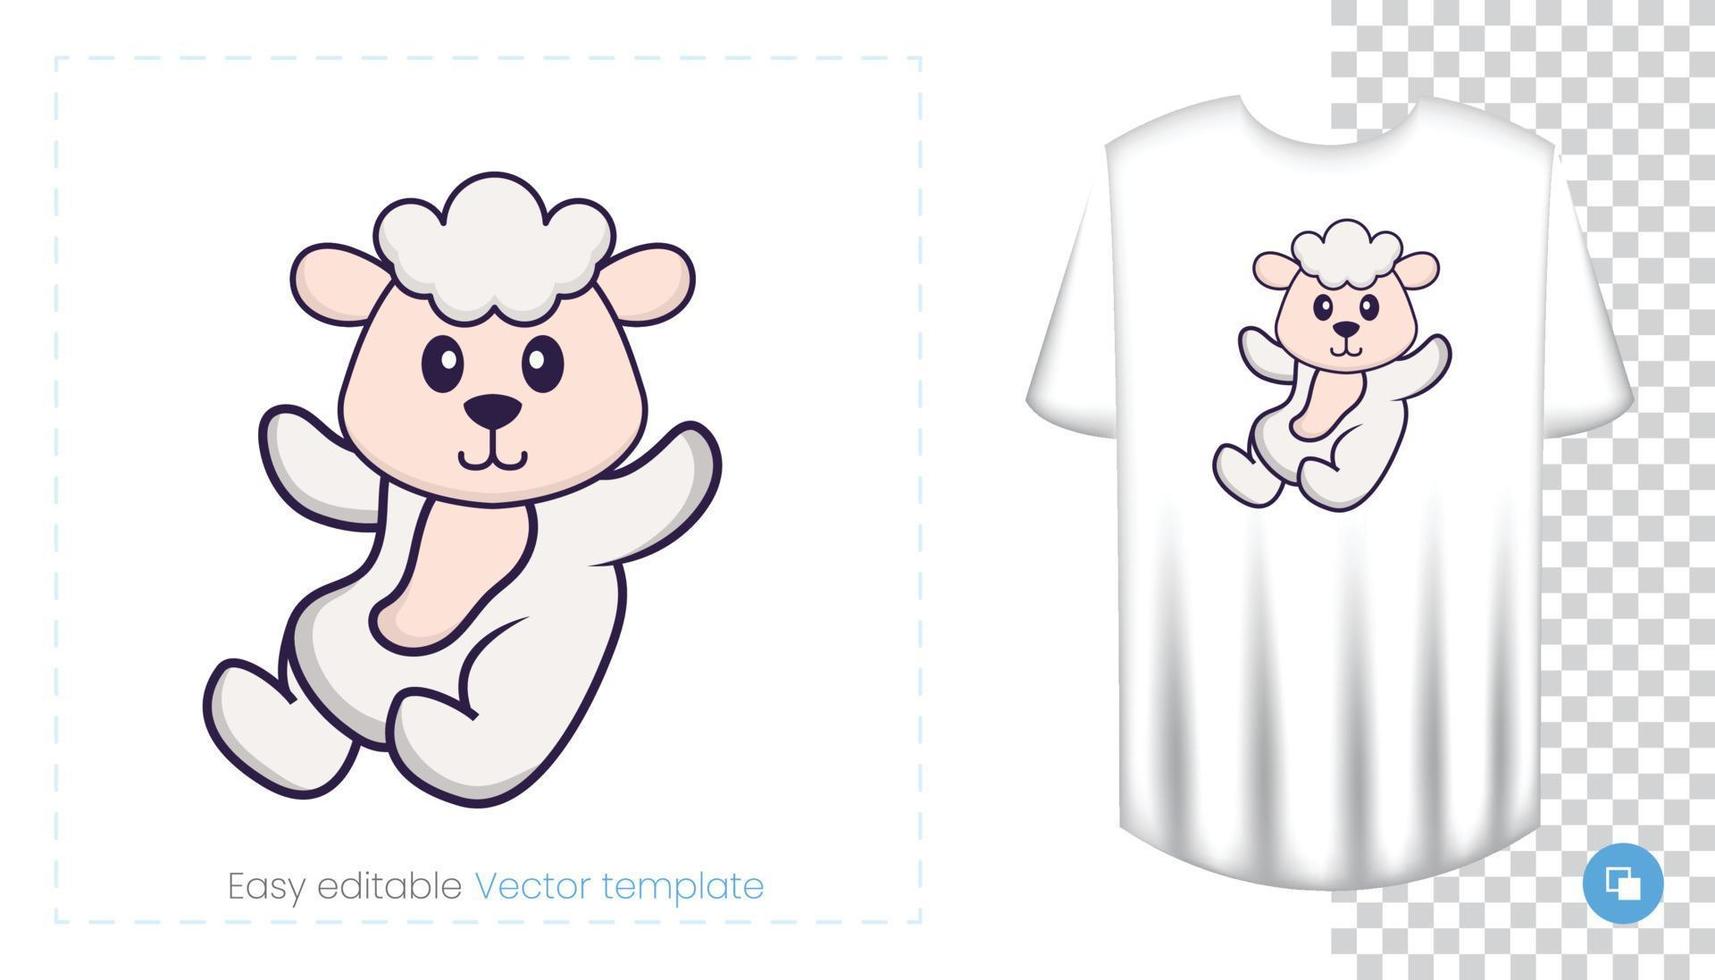 simpatico personaggio di pecora. stampe su t-shirt, felpe, custodie per cellulari, souvenir. illustrazione vettoriale isolato su sfondo bianco.